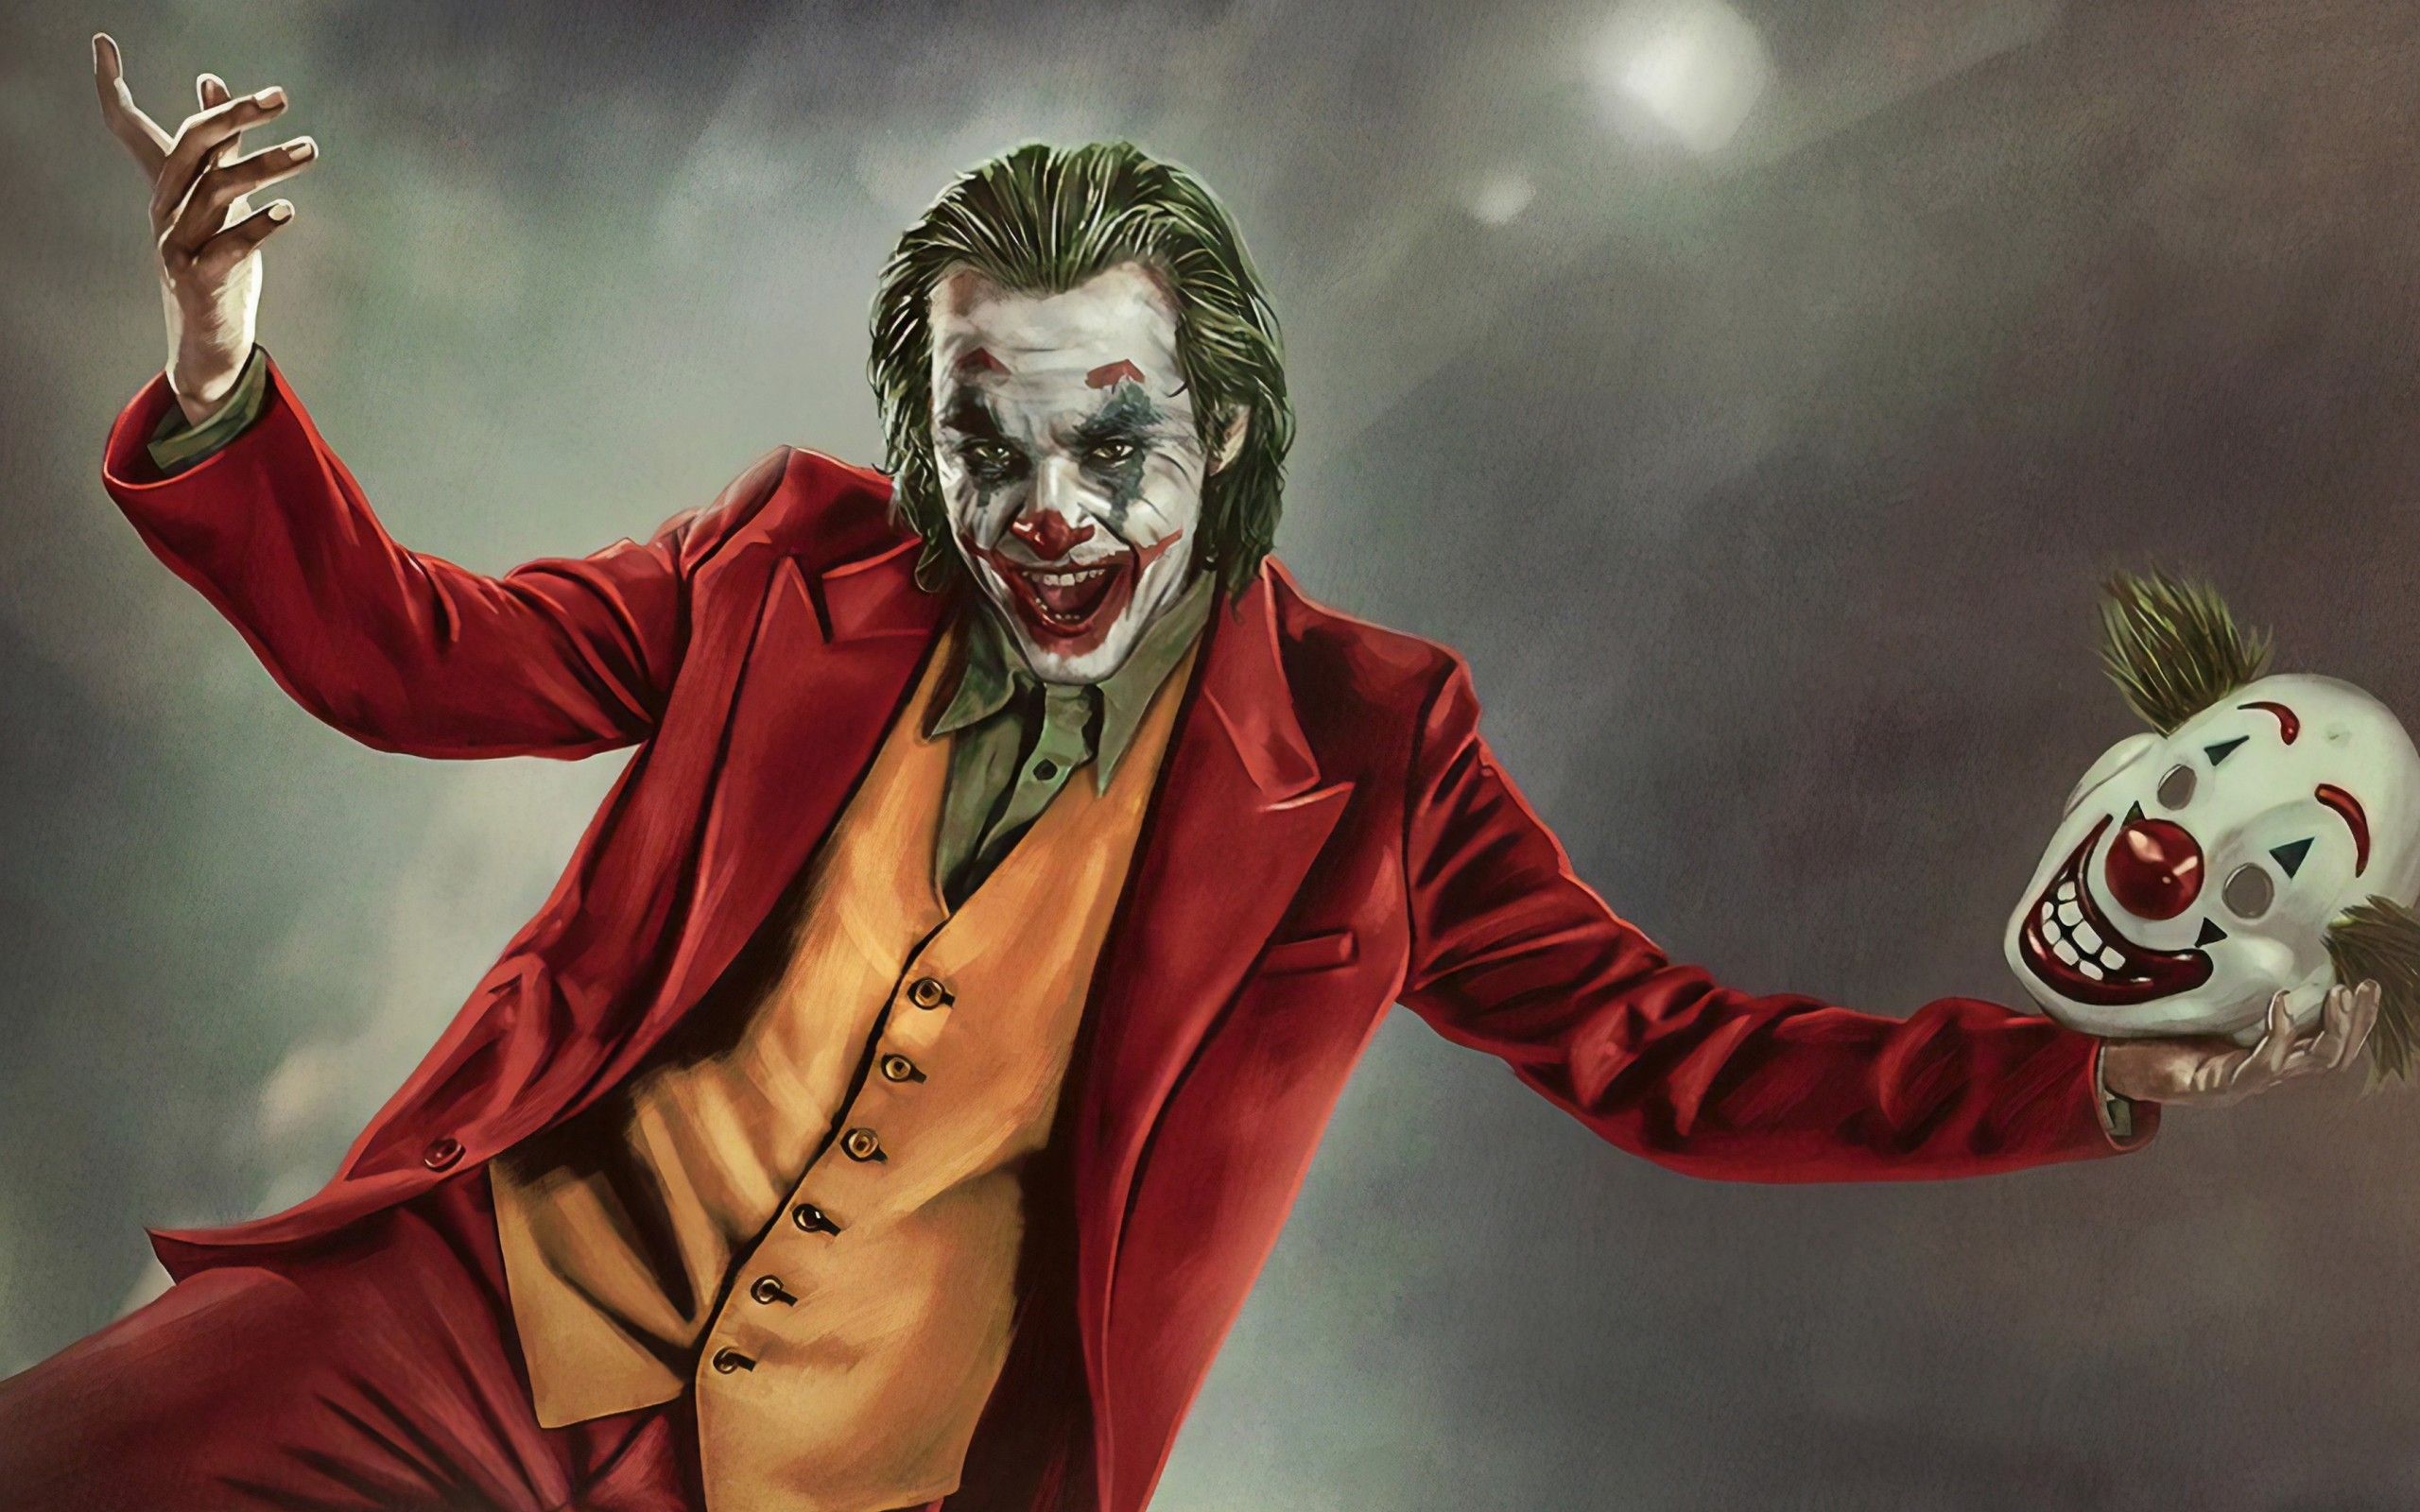 Joker 2019 Wallpapers